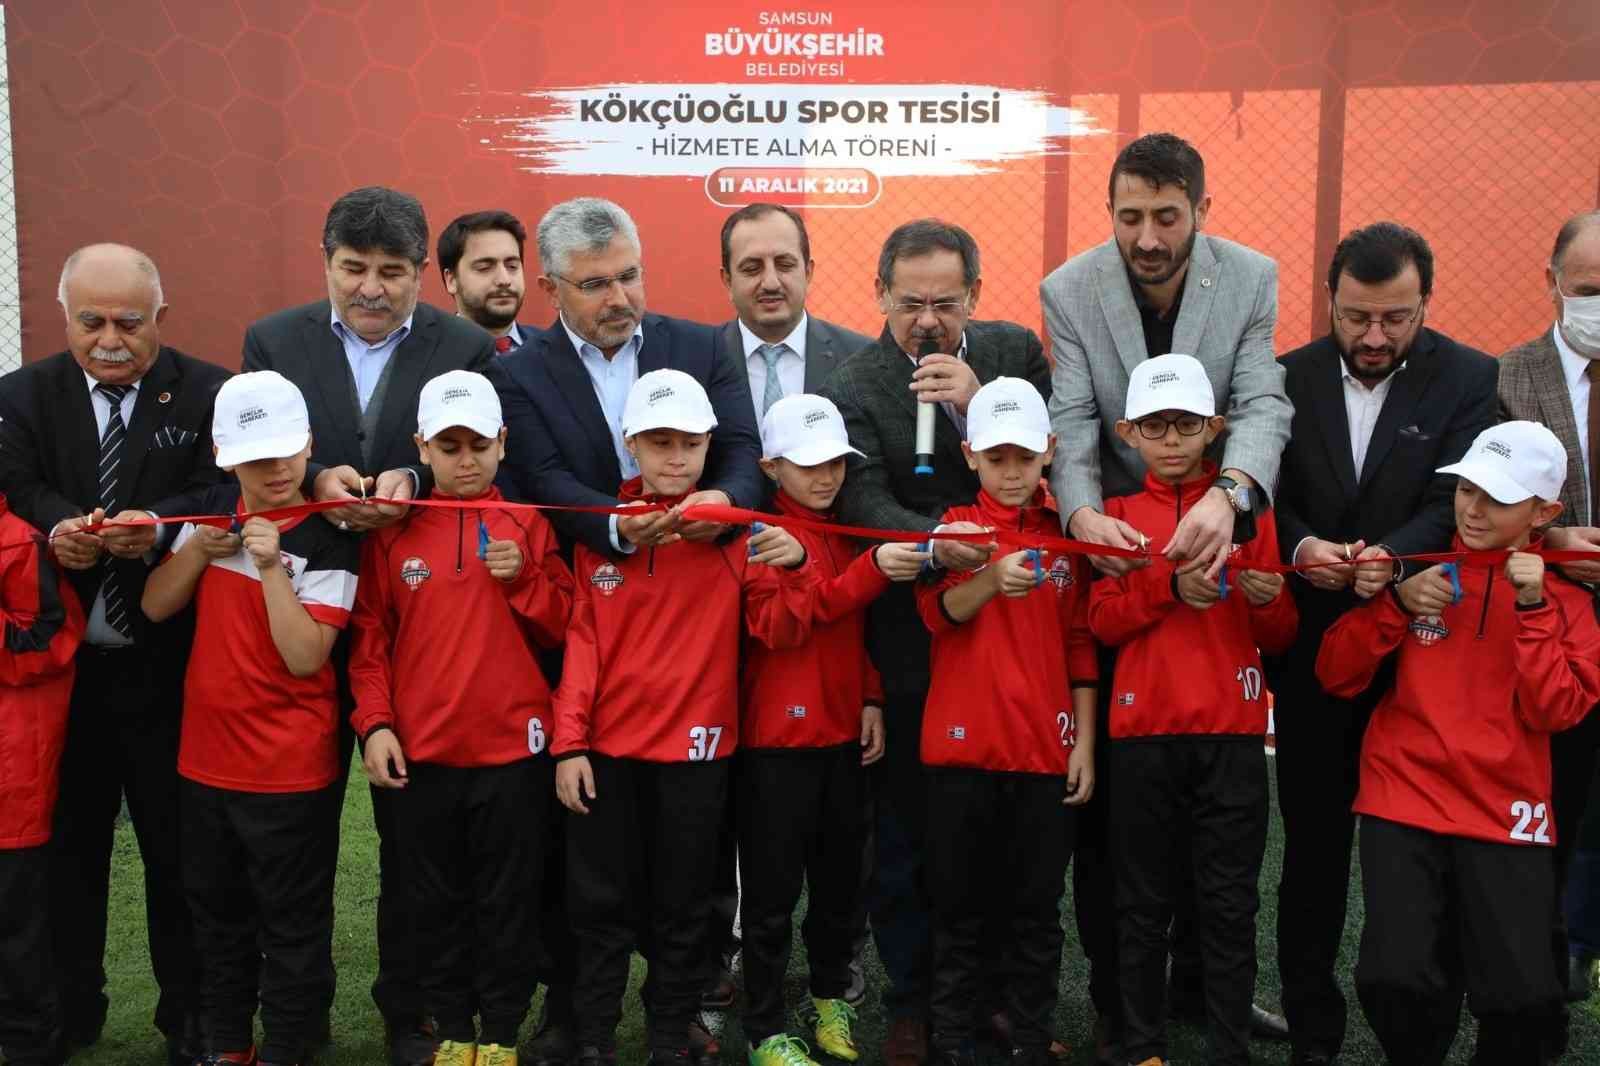 Başkan Demir: “Hizmetimizin merkezi çocuklarımız” #samsun